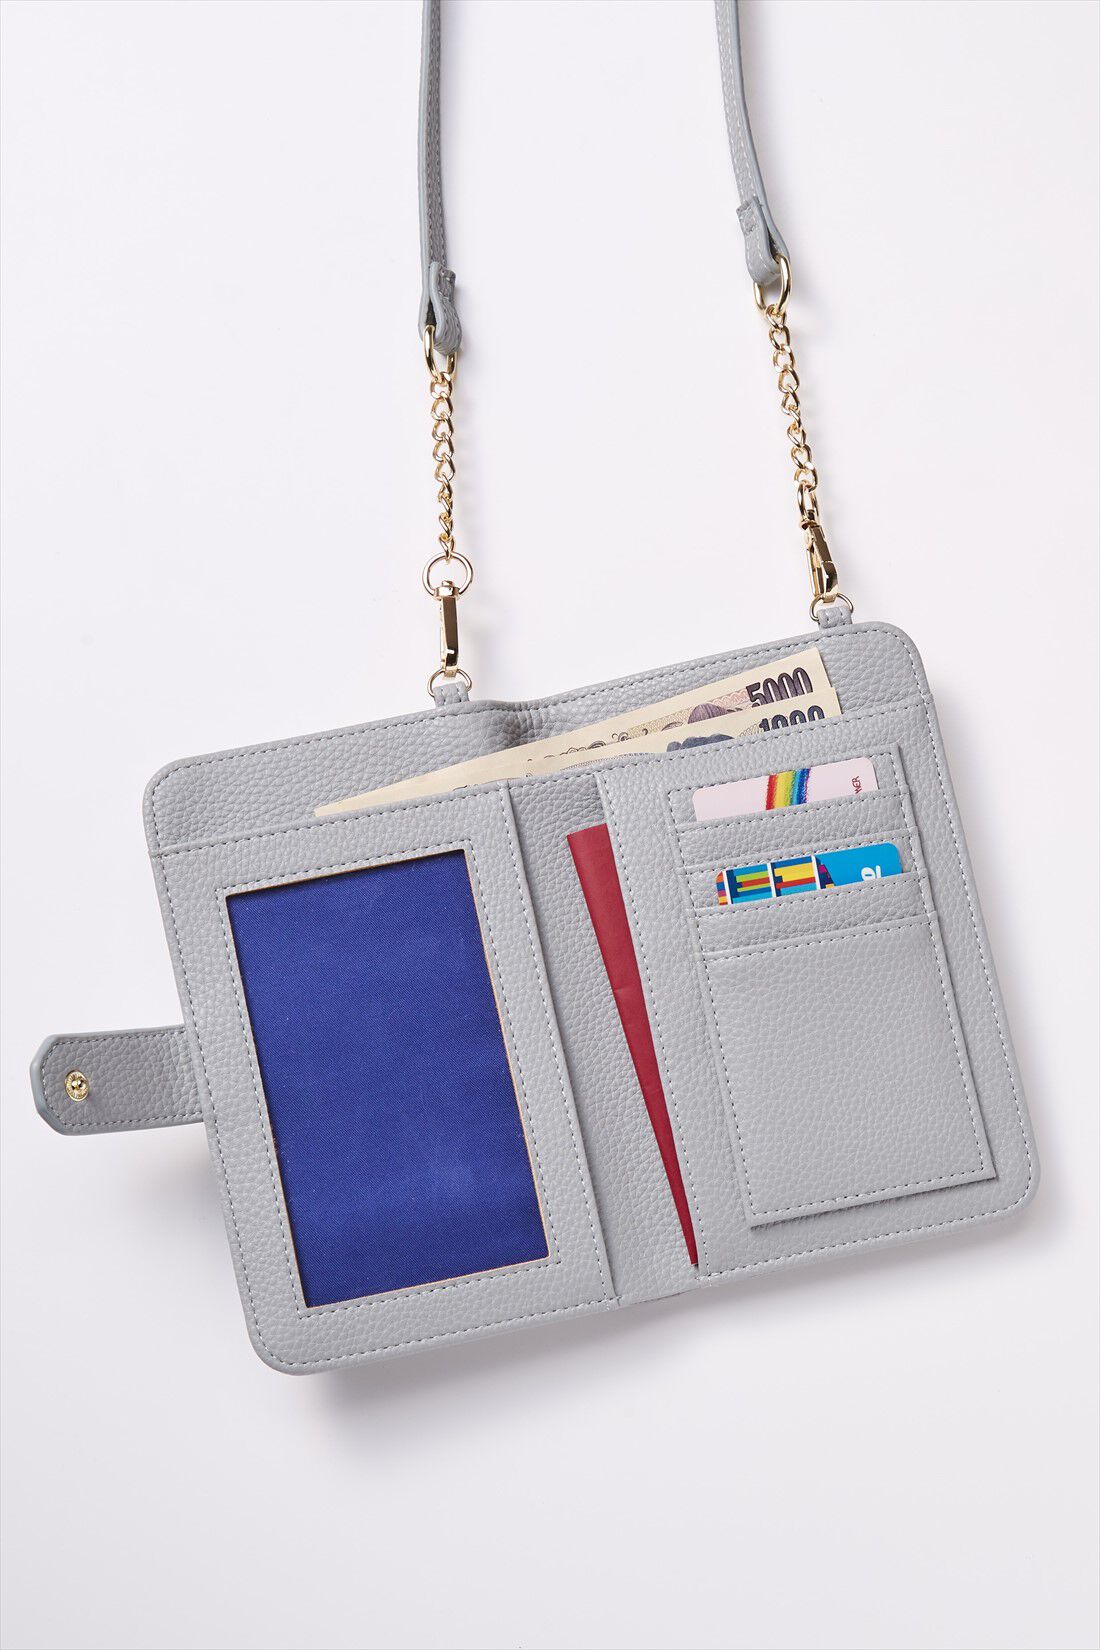 OSYAIRO|OSYAIRO フォトポケットが付いた スマホ＆おさいふポーチ〈ブルー〉|ひらくと左側はフォトポケット。推しの写真を入れてニヤニヤできます。笑　右側は通帳、パスポートなども入るサイズのポケット、4枚分のカードポケット。